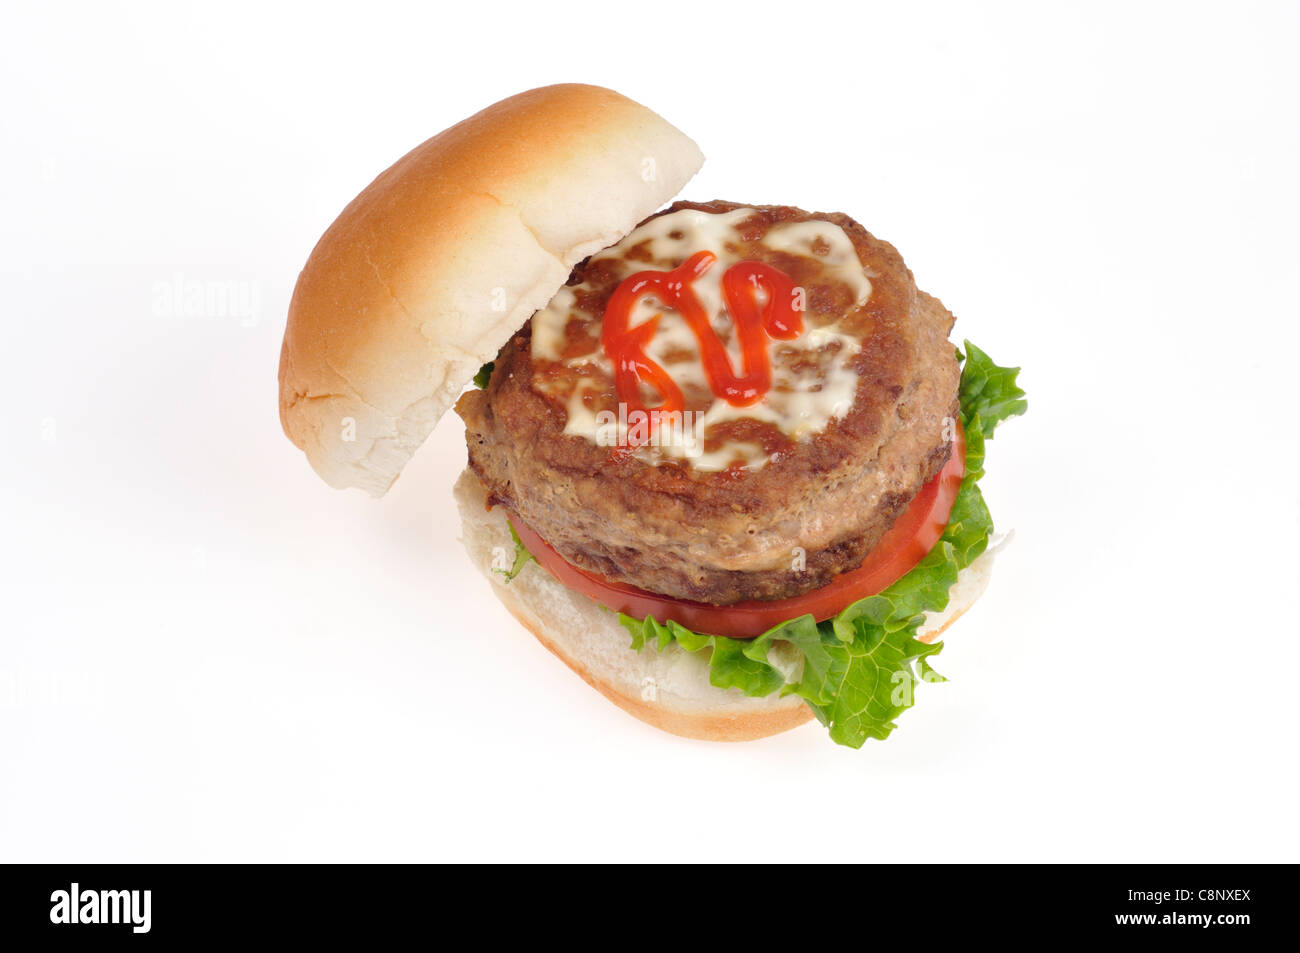 Ouvrez hamburger de dinde avec laitue, tomate, ketchup et de la mayonnaise de pain sur fond blanc. Banque D'Images